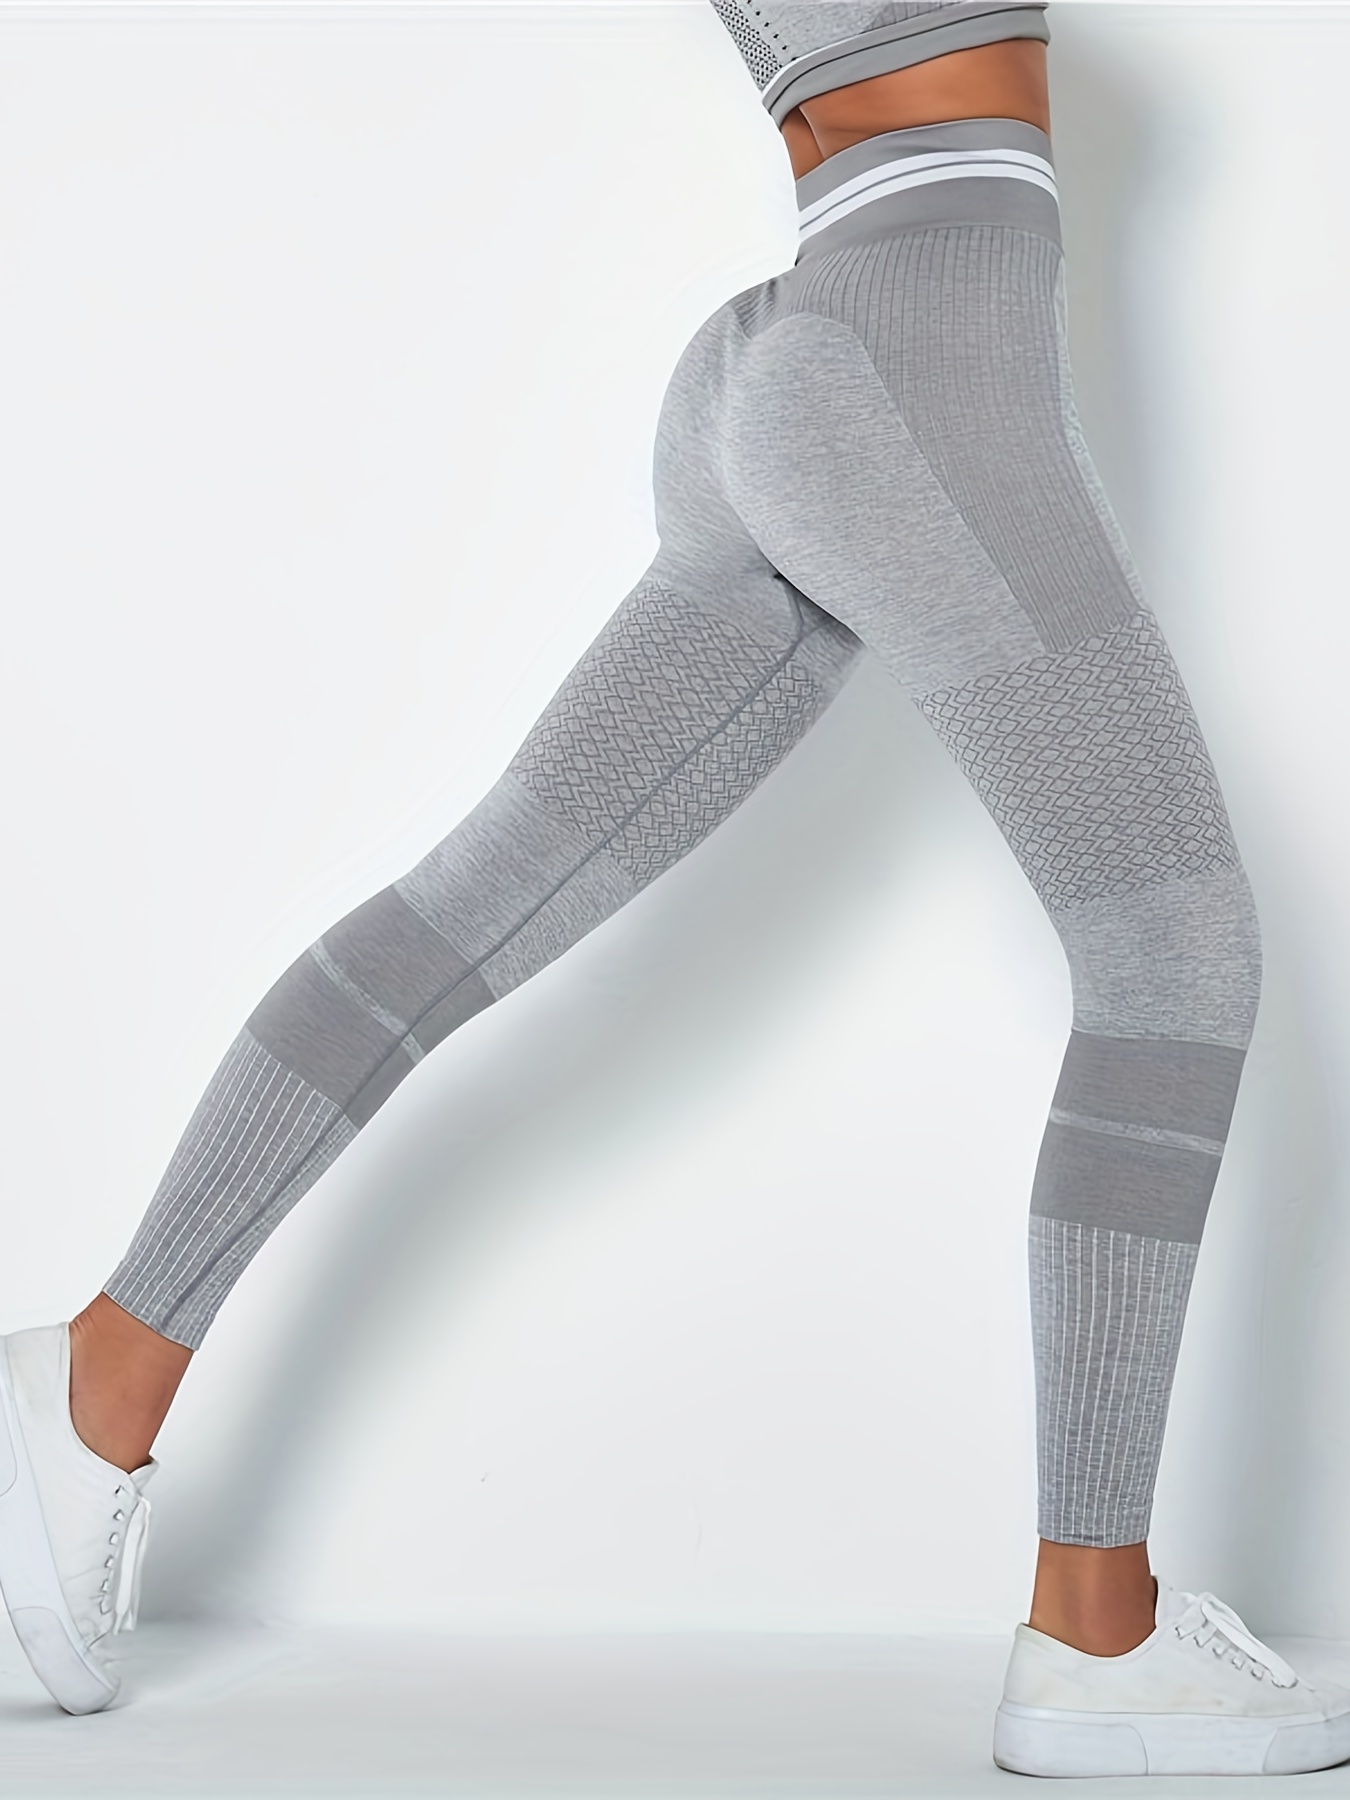 Mallas deportivas de cintura alta para mujer, pantalones de Yoga